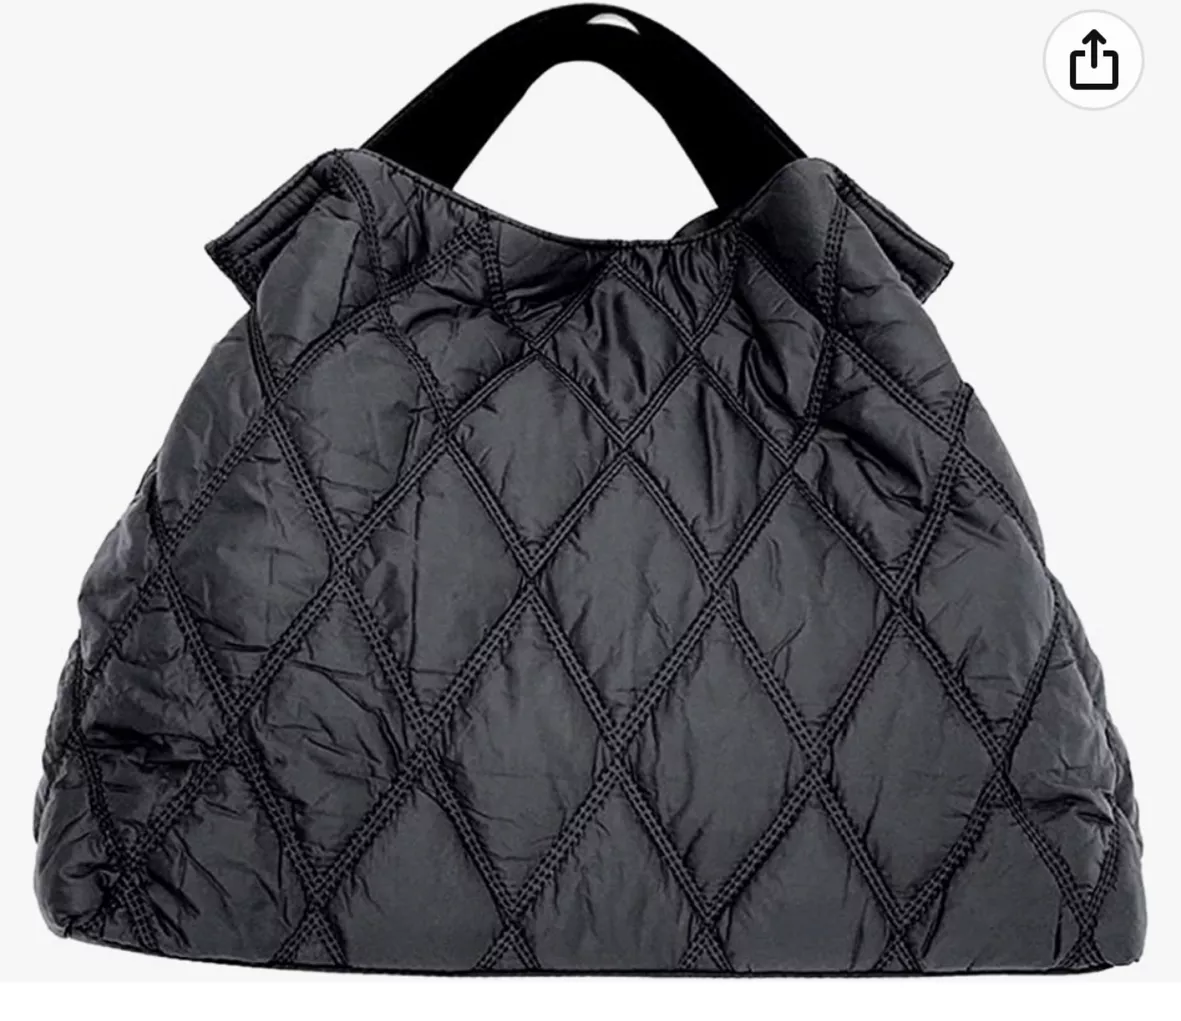 Lightweight Shoulder bag for … curated on LTK